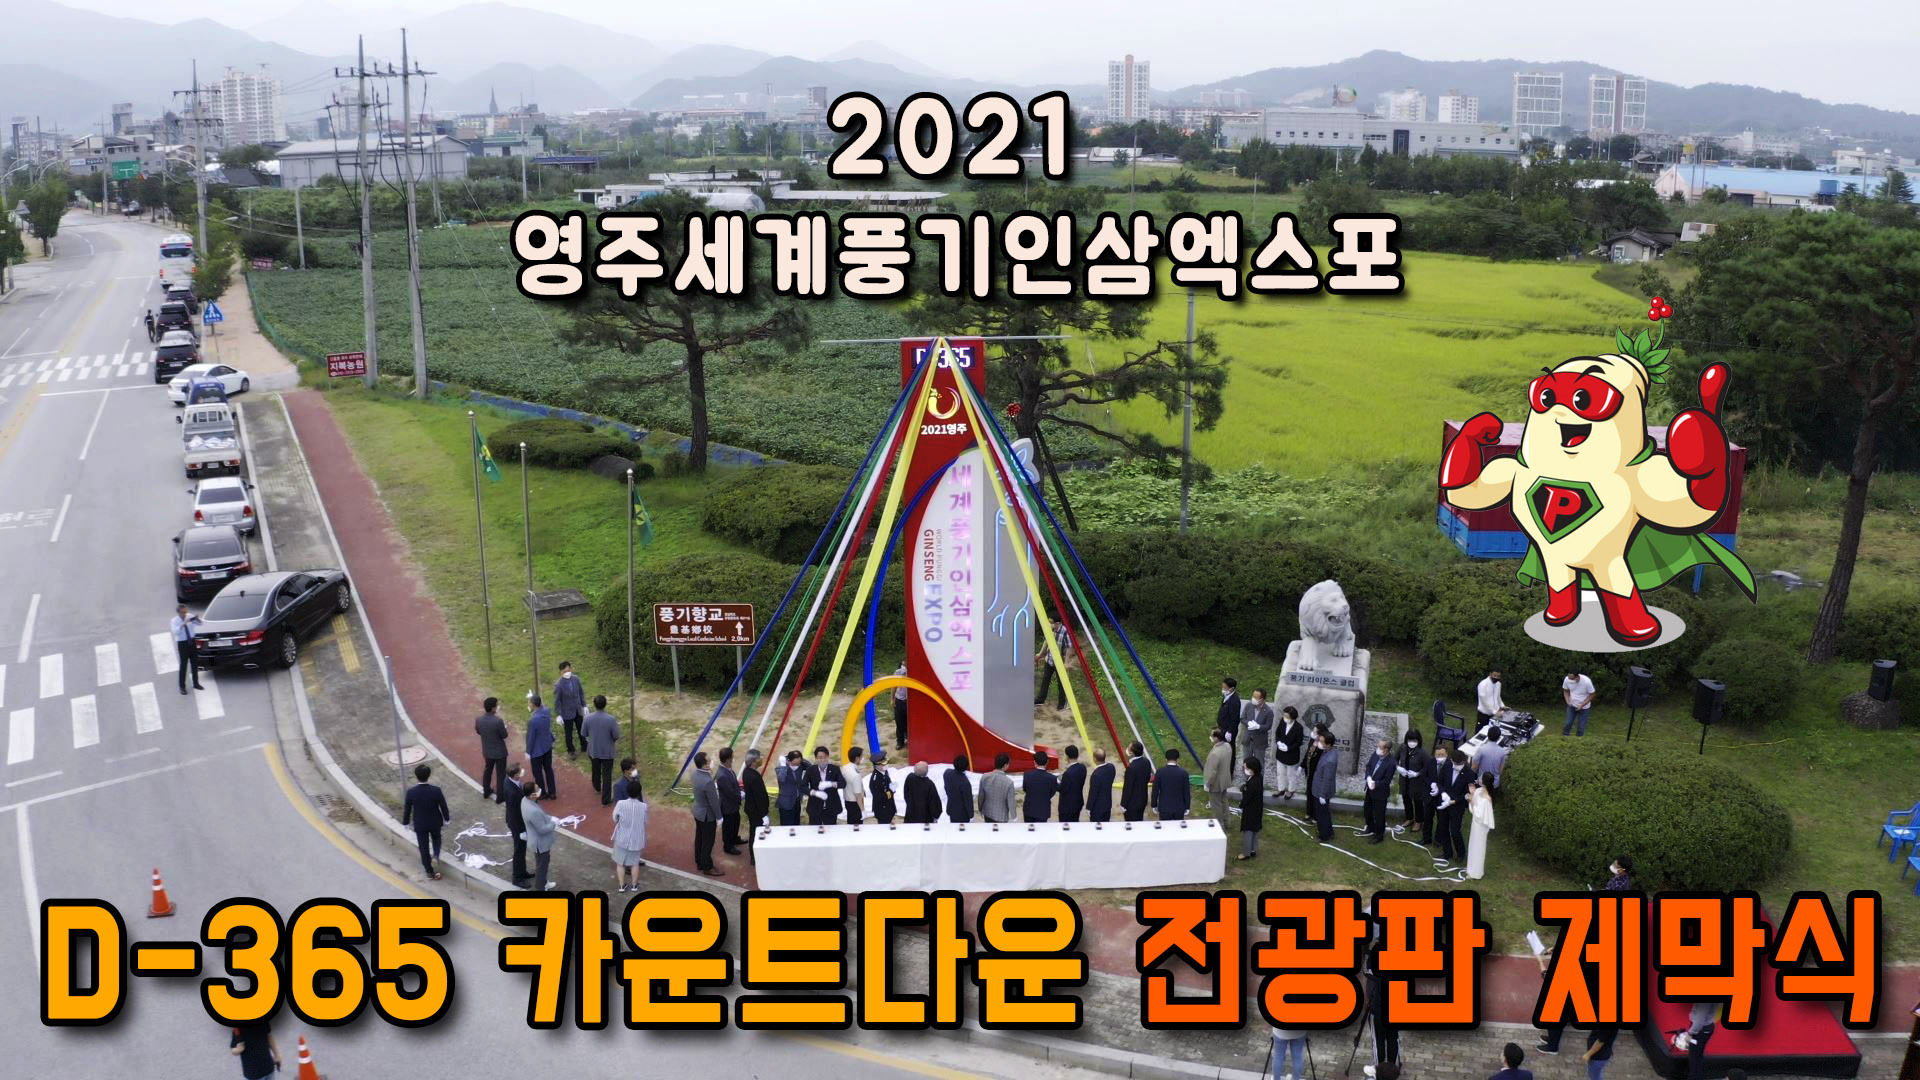 2021영주세계풍기인삼엑스포, 앞으로 1년!